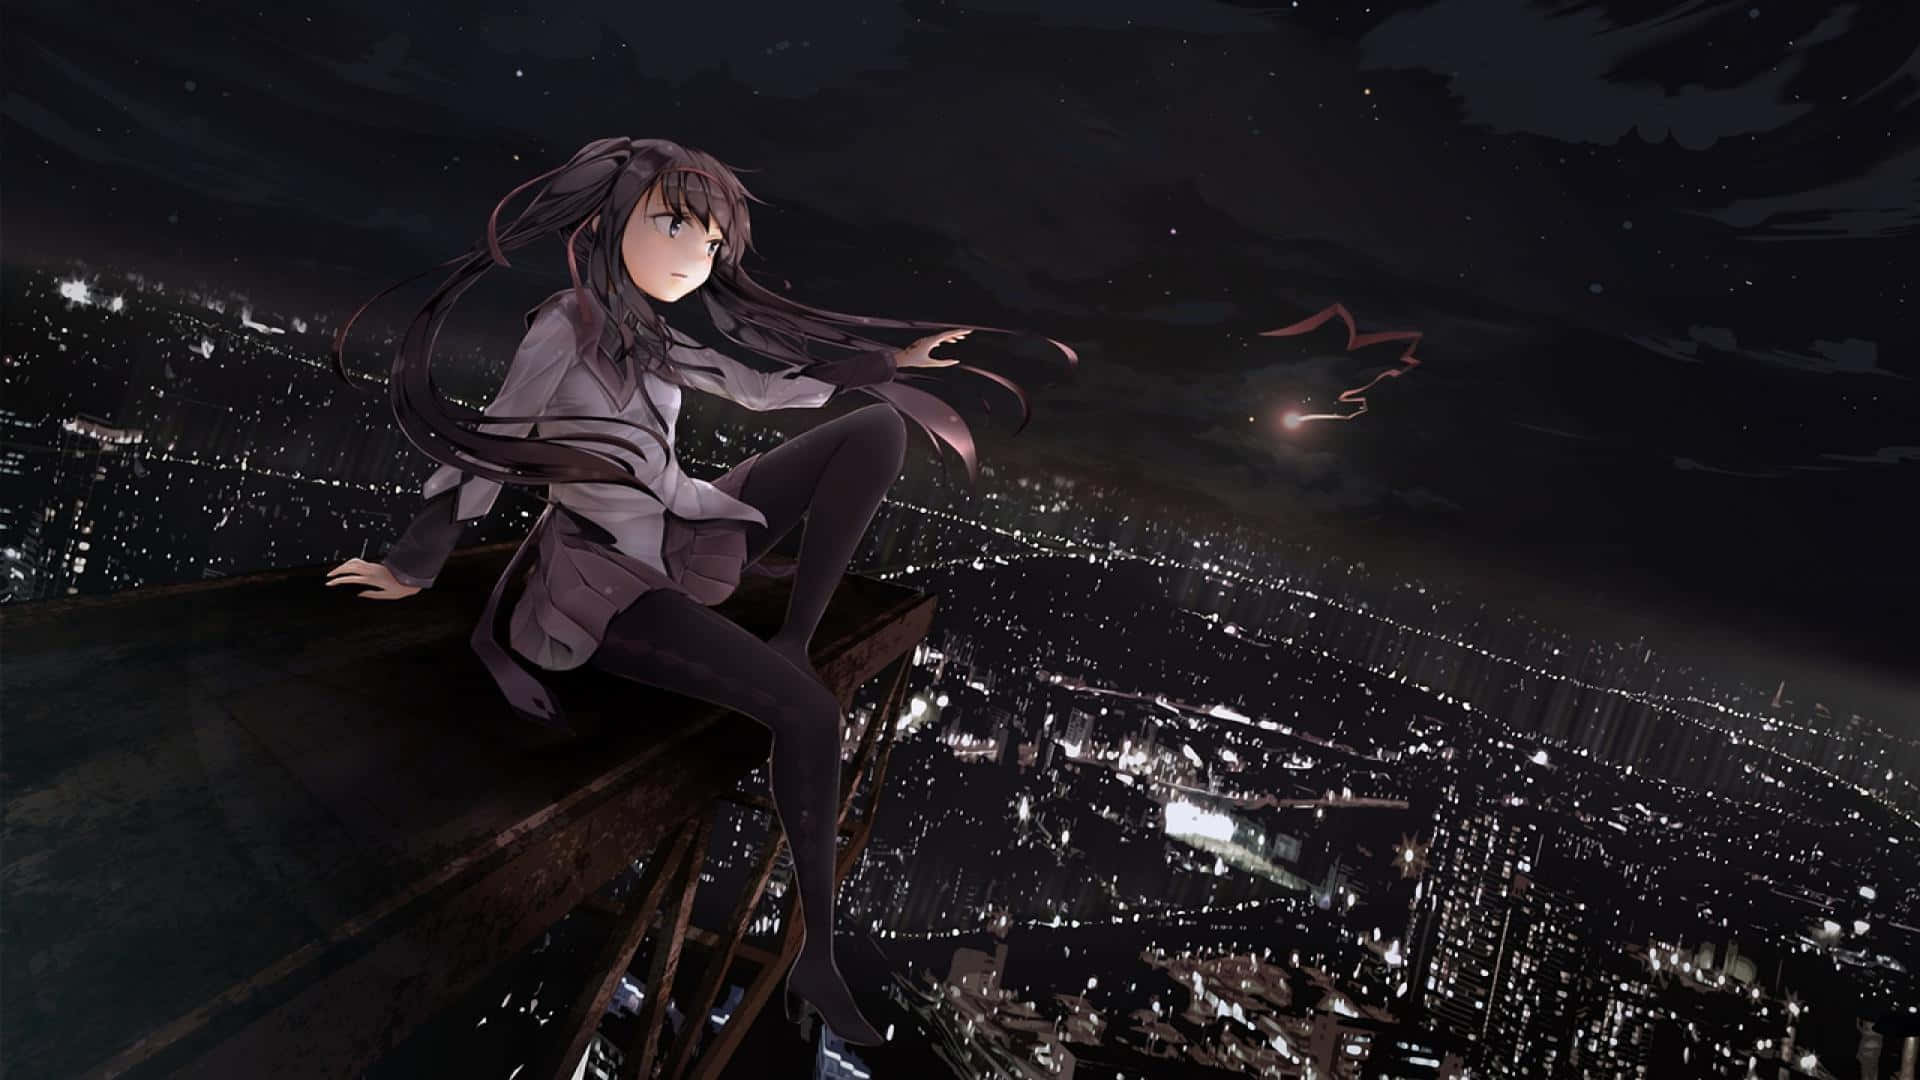 Girl In The City Dark Aesthetic Anime Pfp Wallpaper